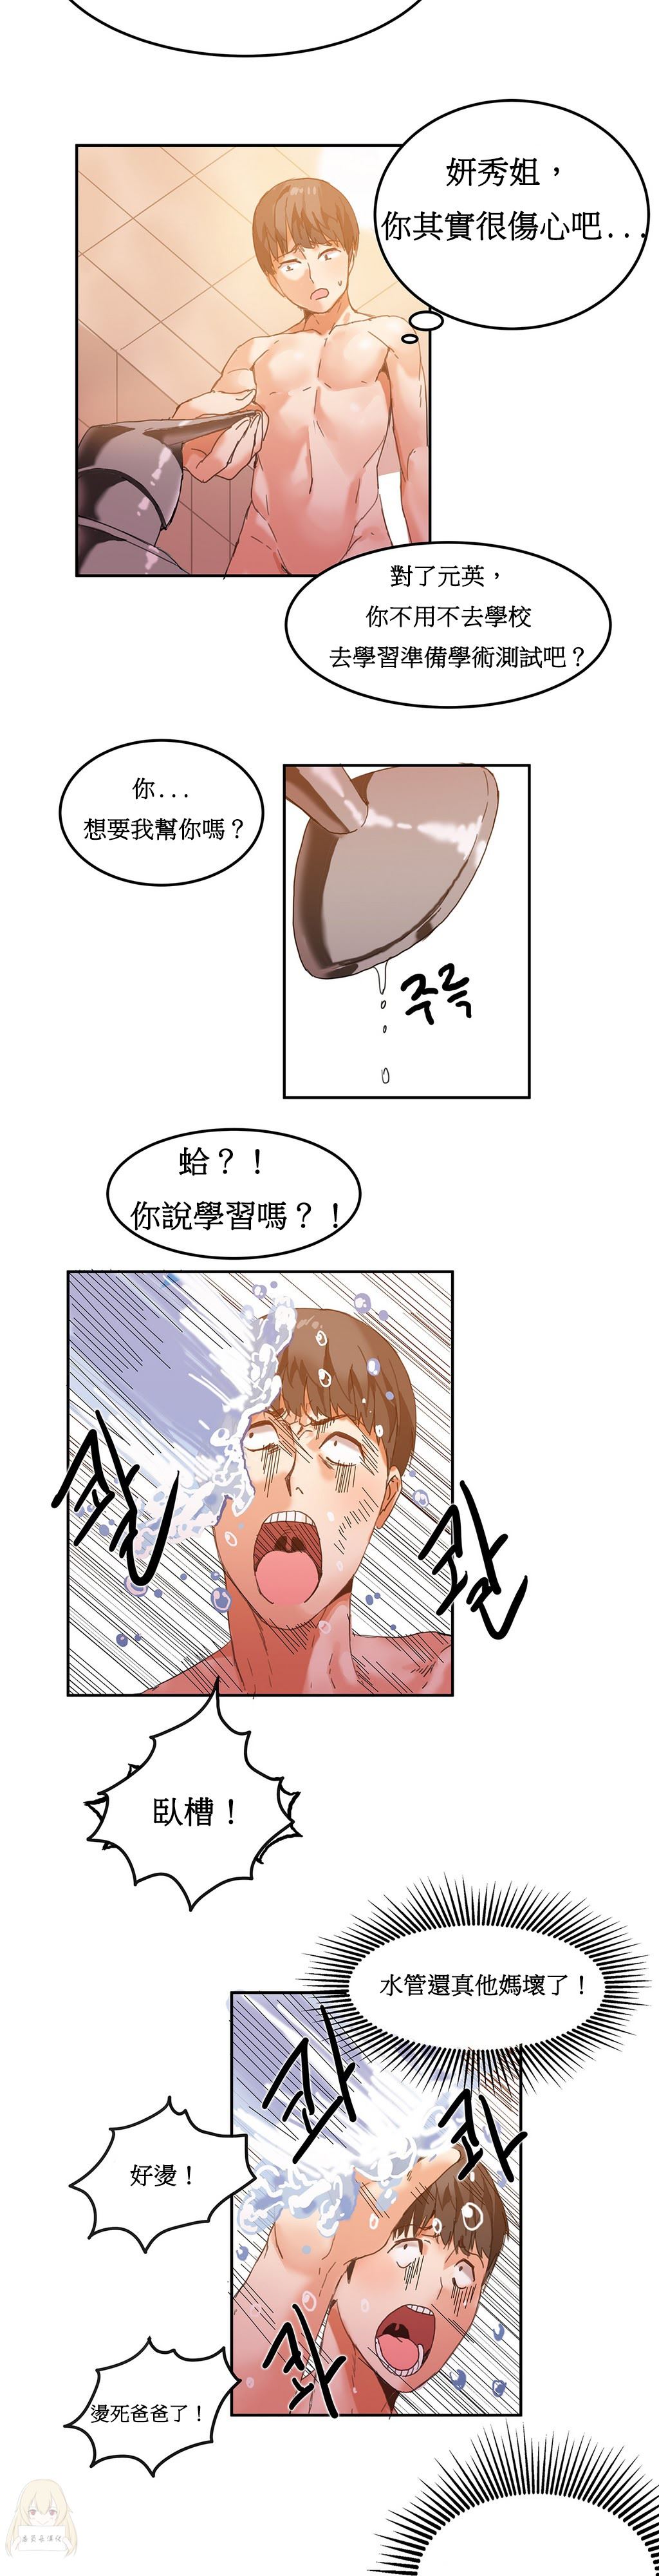 韩国污漫画 寄宿公寓-陰氣之洞 第5话 15